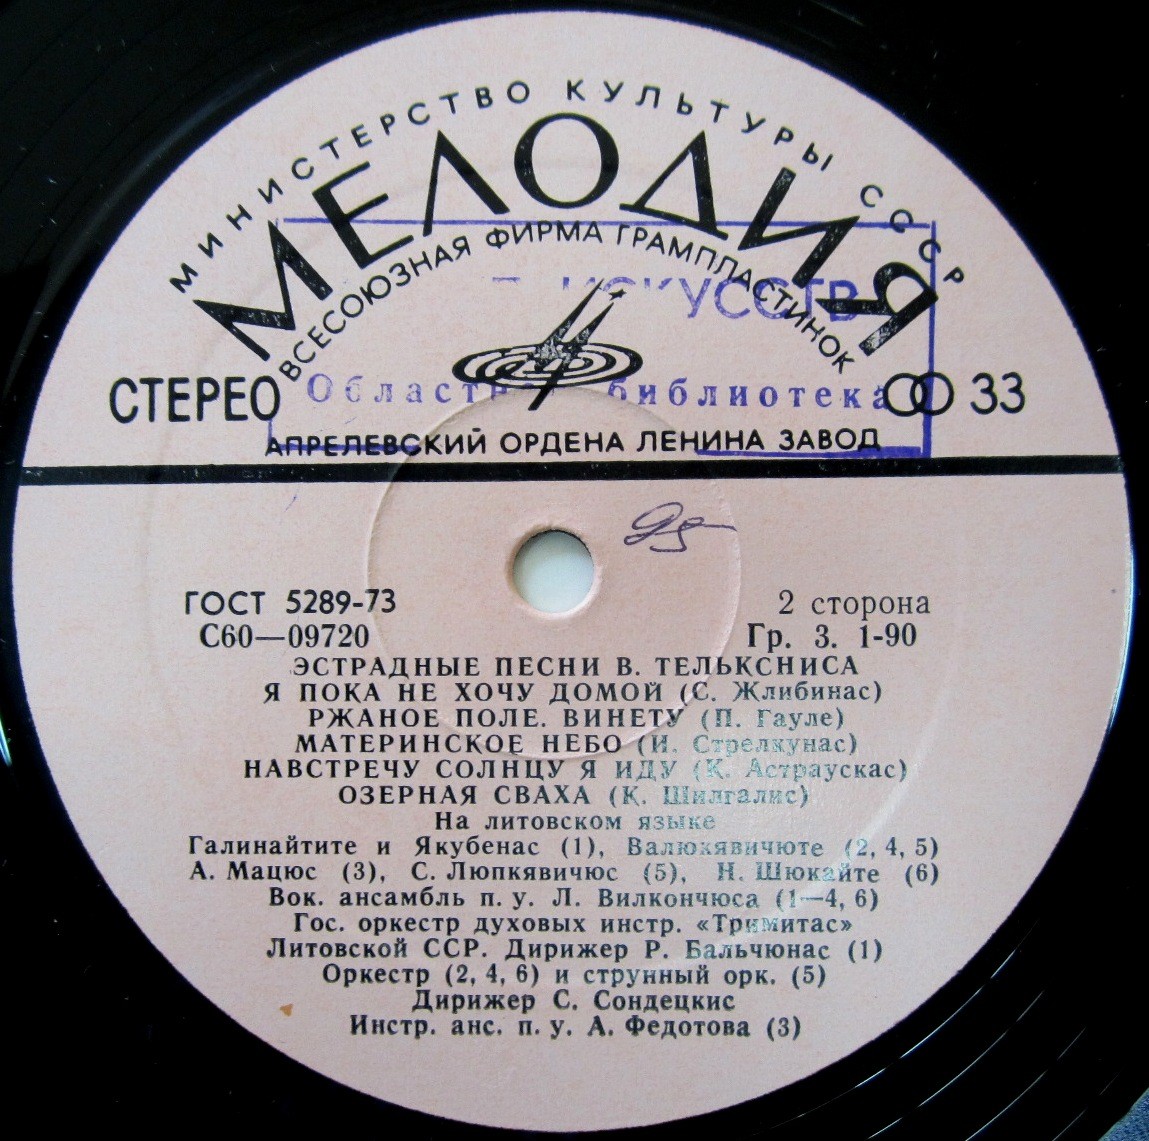 Эстрадные песни Вигандаса ТЕЛЬКСНИСА (1934) - на литовском языке